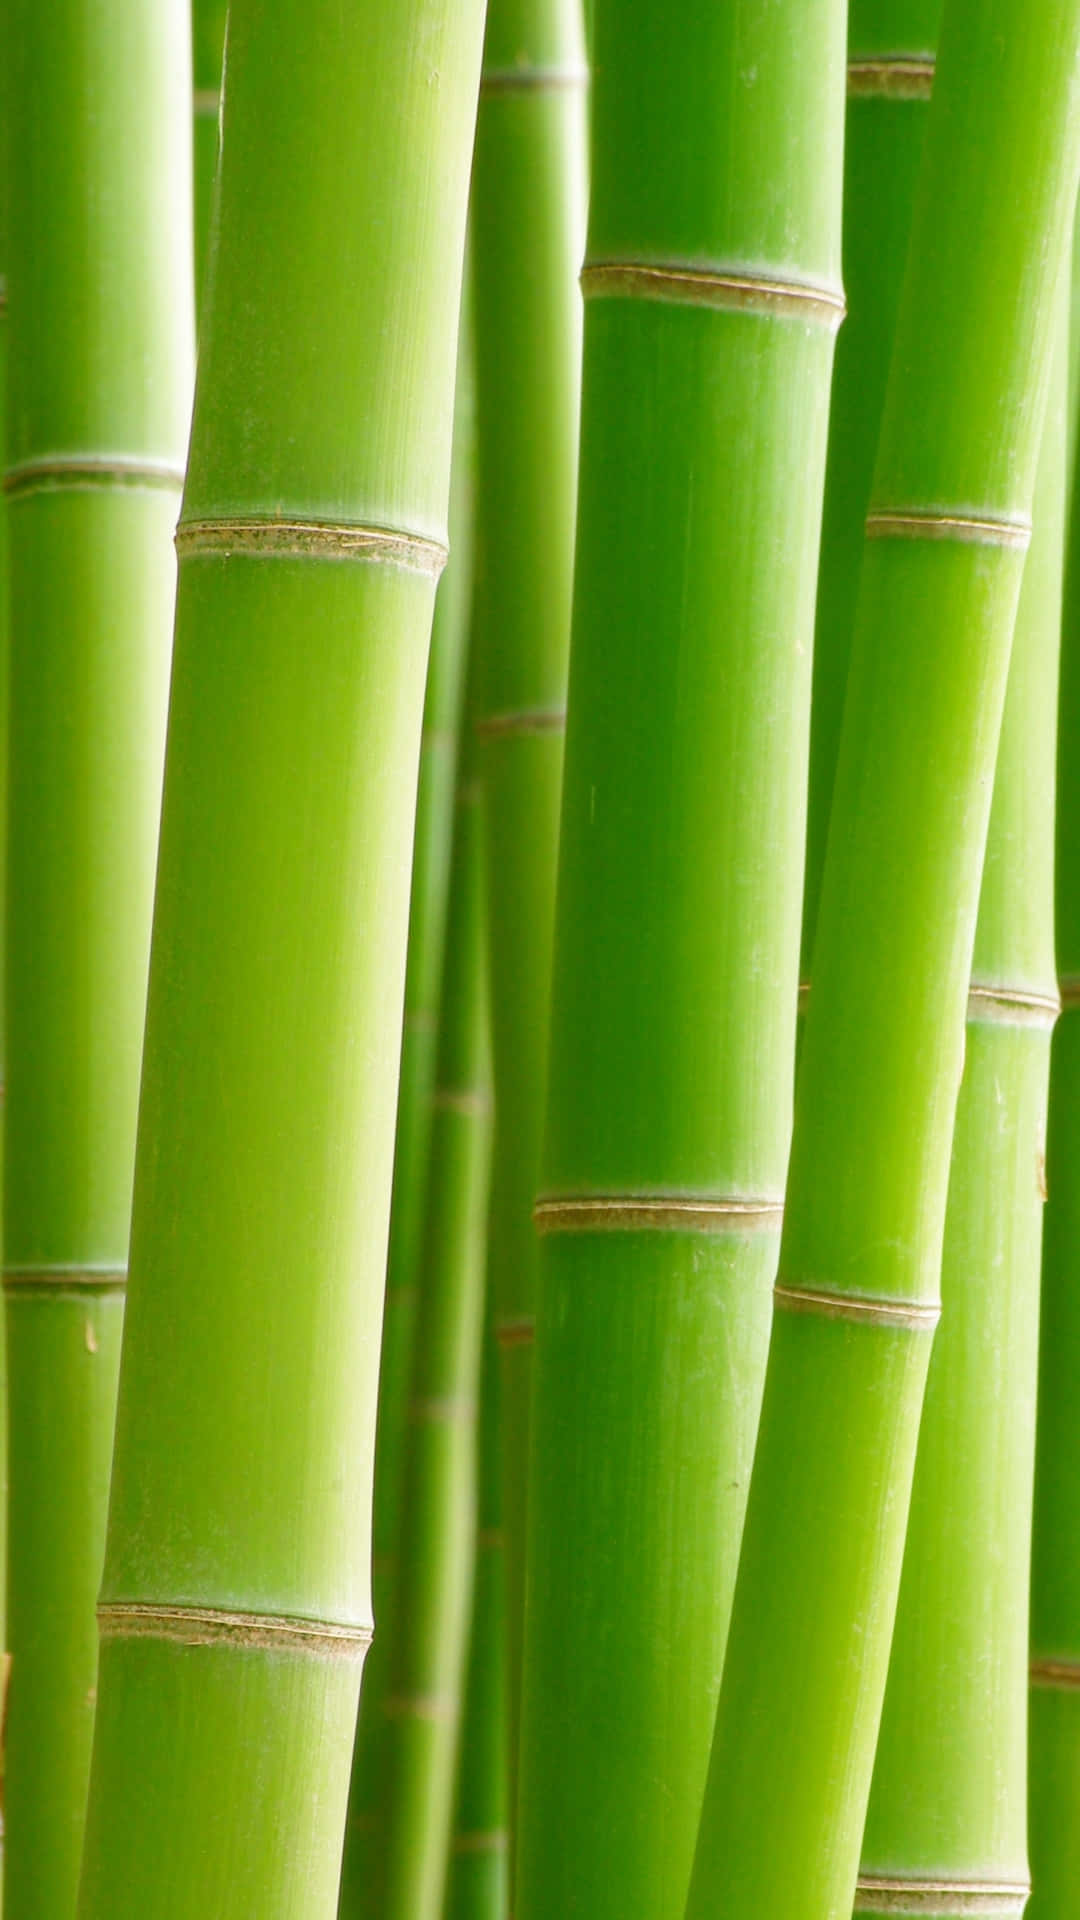 Abracela Biodiversidad Con El Último Teléfono De Bambú. Fondo de pantalla